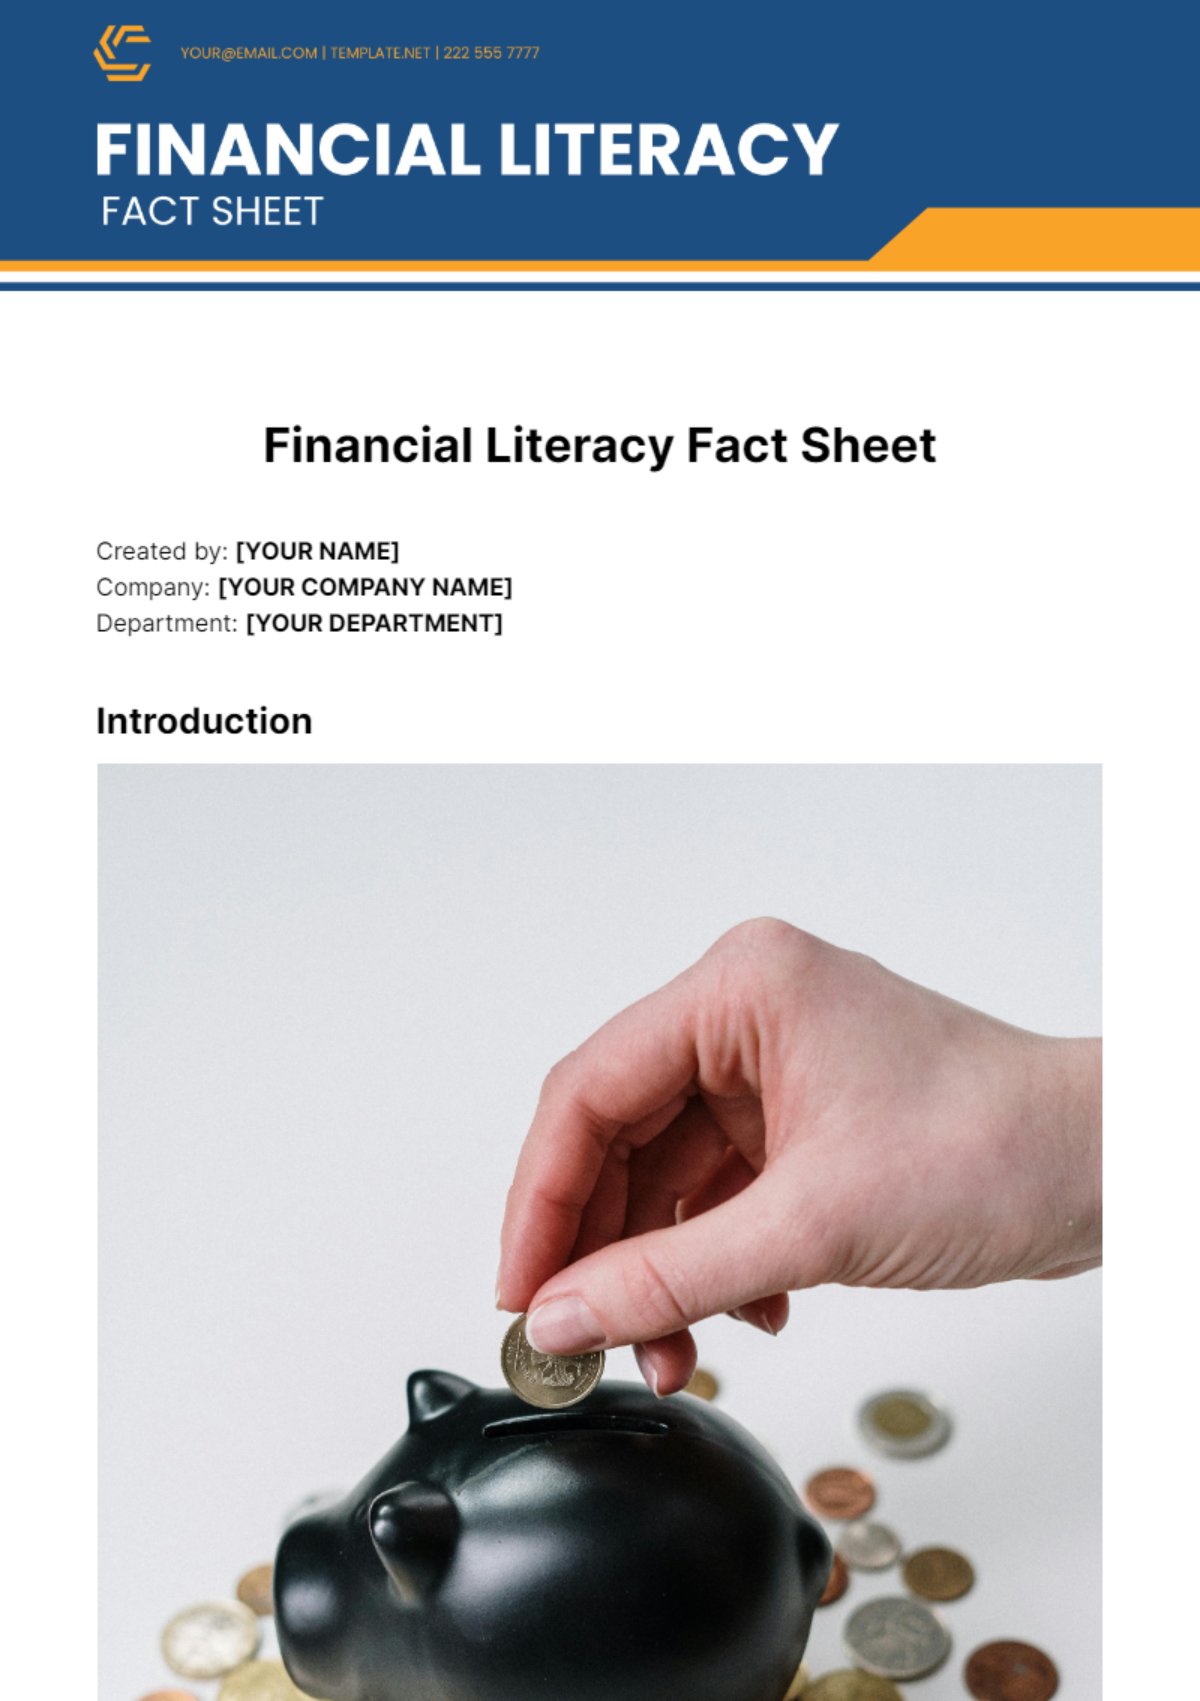 Financial Literacy Fact Sheet Template